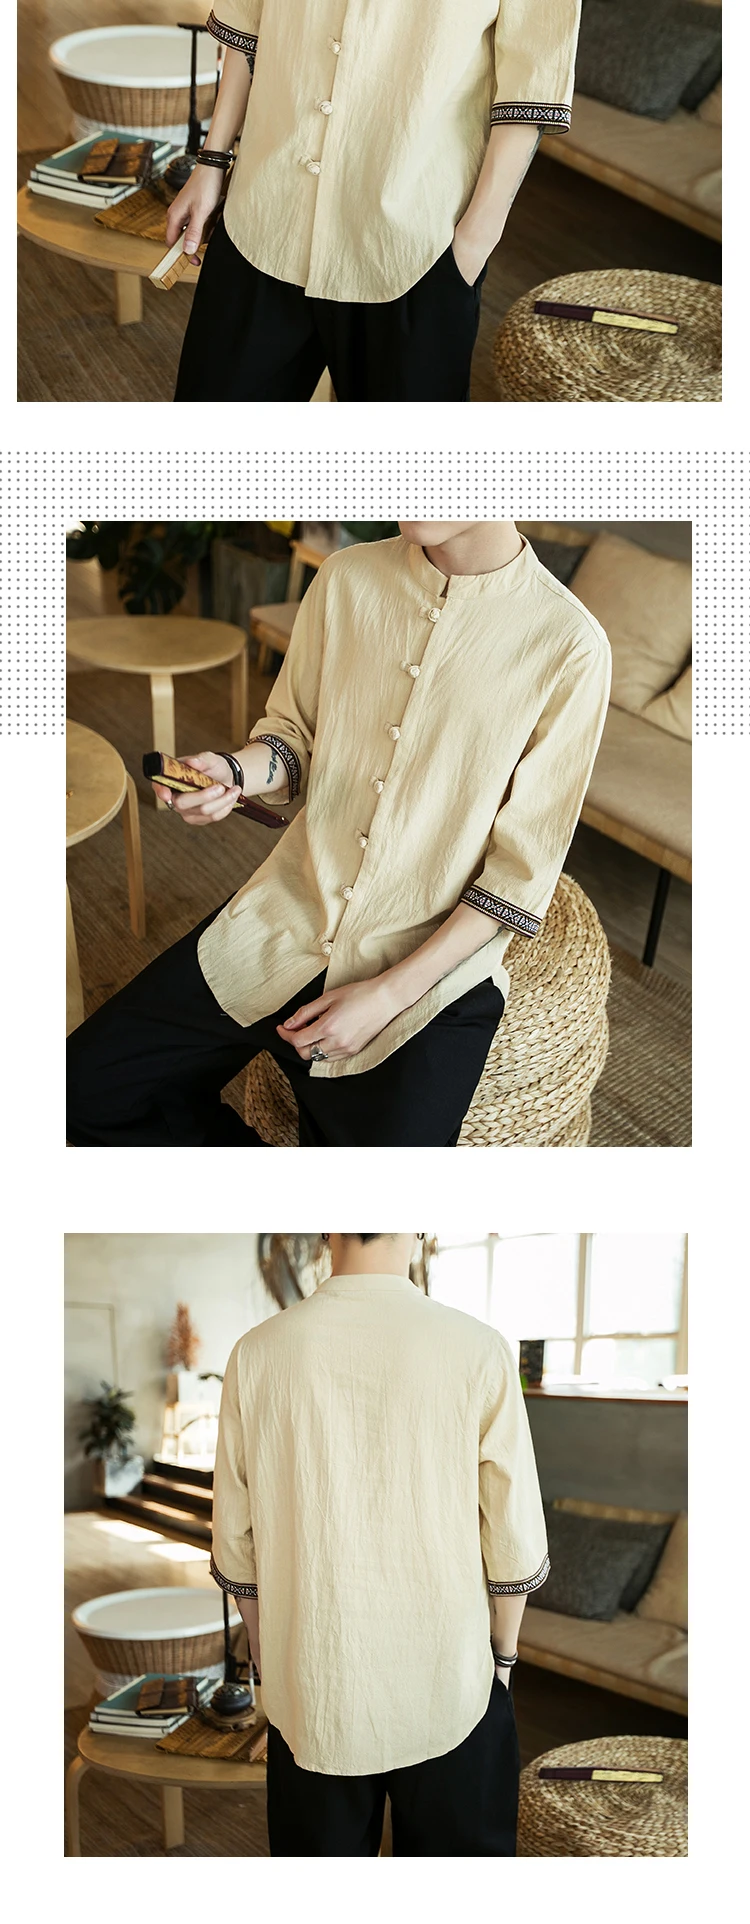 FFXZSJ бренд Sinicism мужские хлопок белье Вышивка Повседневное рубашки 2018 Человек Лето Половина рукава рубашки мужской китайский кнопку рубашки